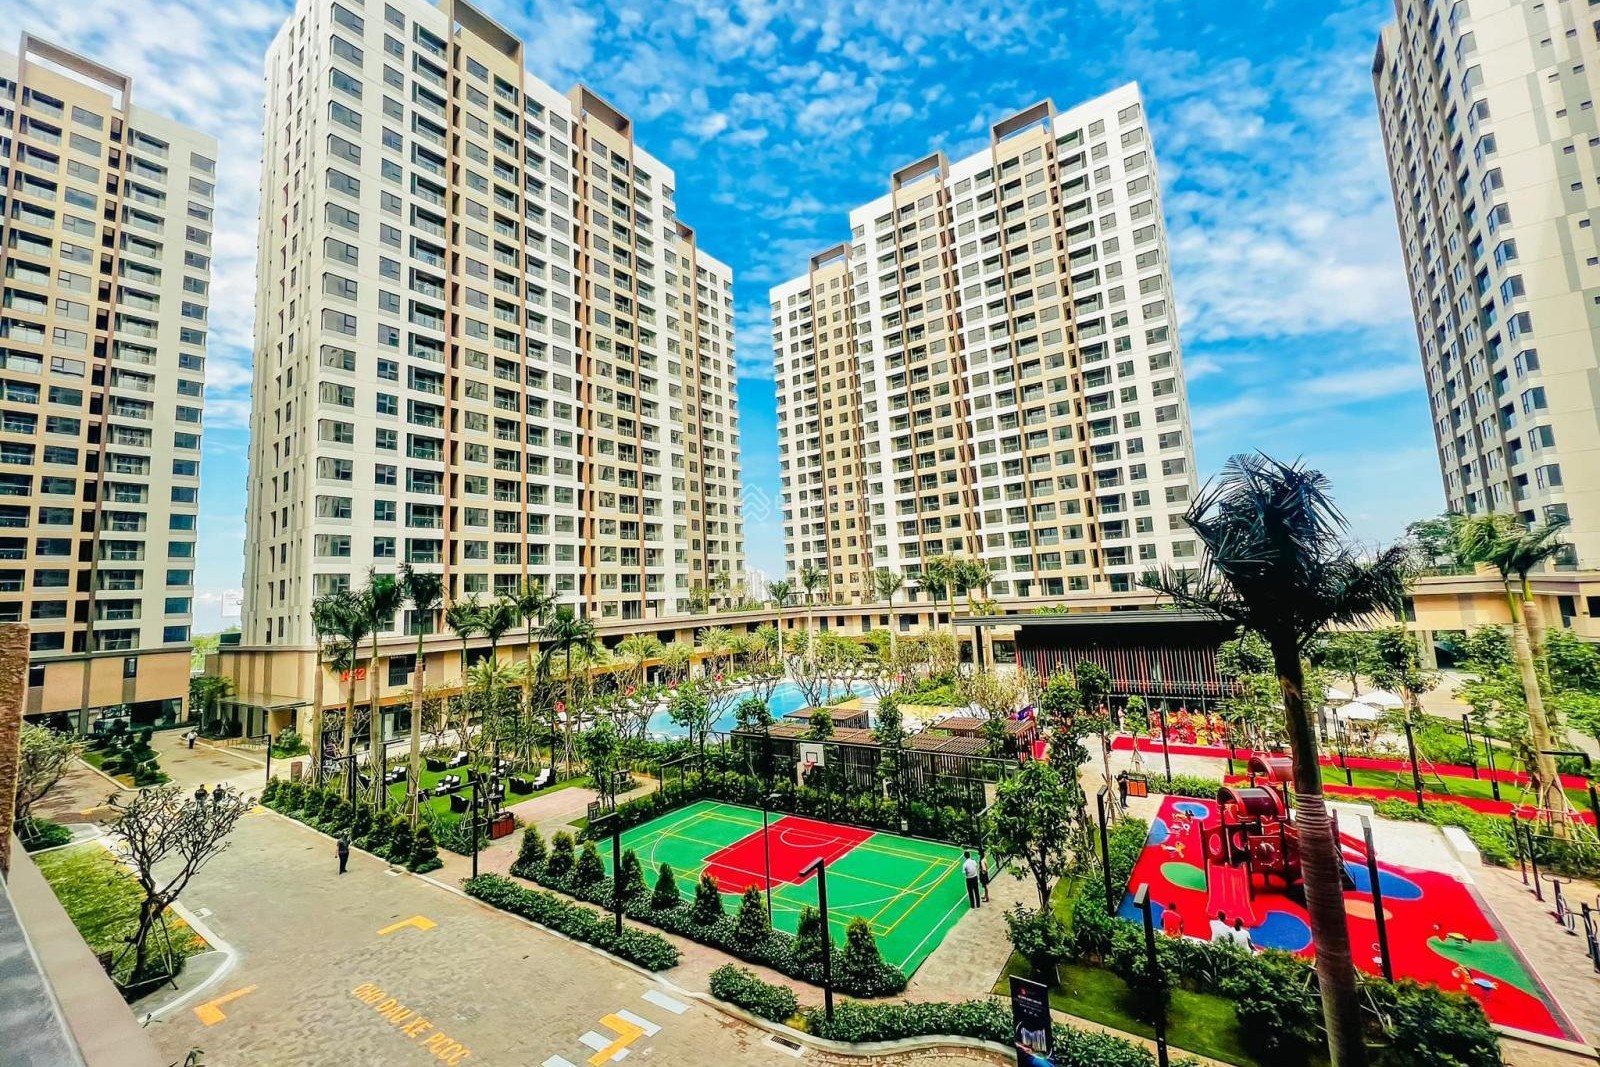 
Dự án Akari City giai đoạn 1 với 1.800 căn hộ dòng Flora condominium đã được bàn giao.&nbsp;
